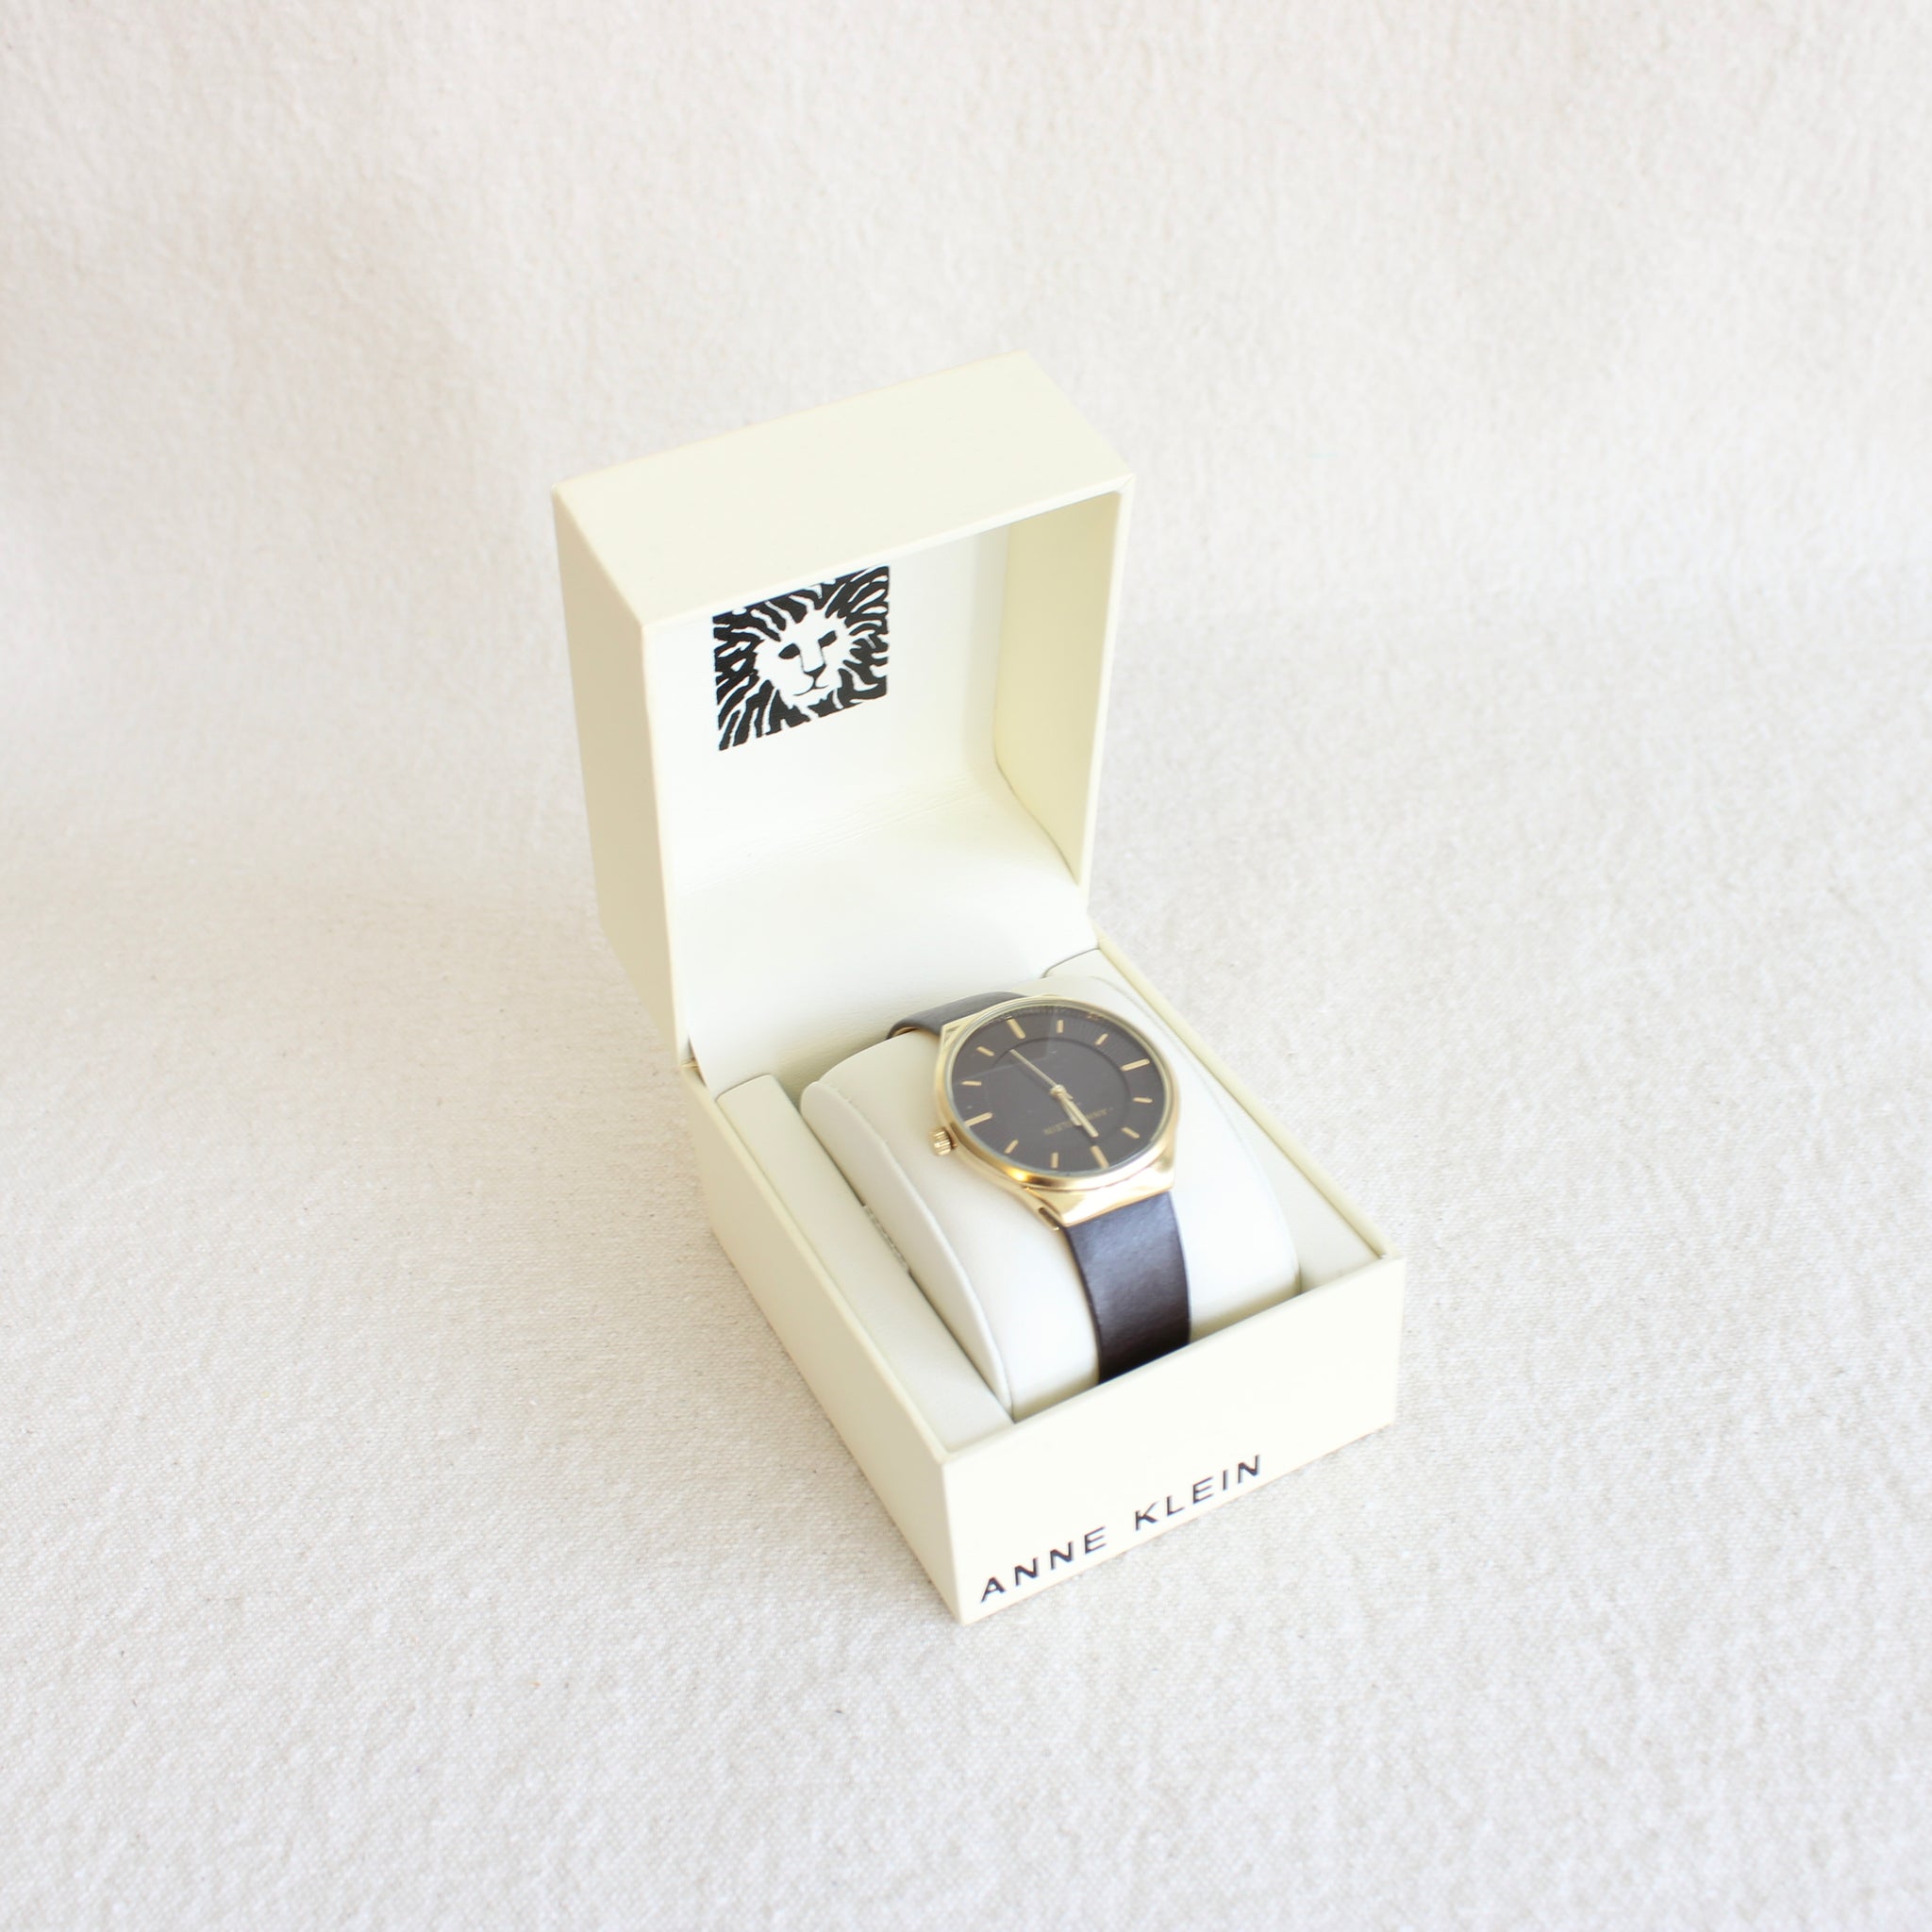 vintage dark face anne klein analog watch